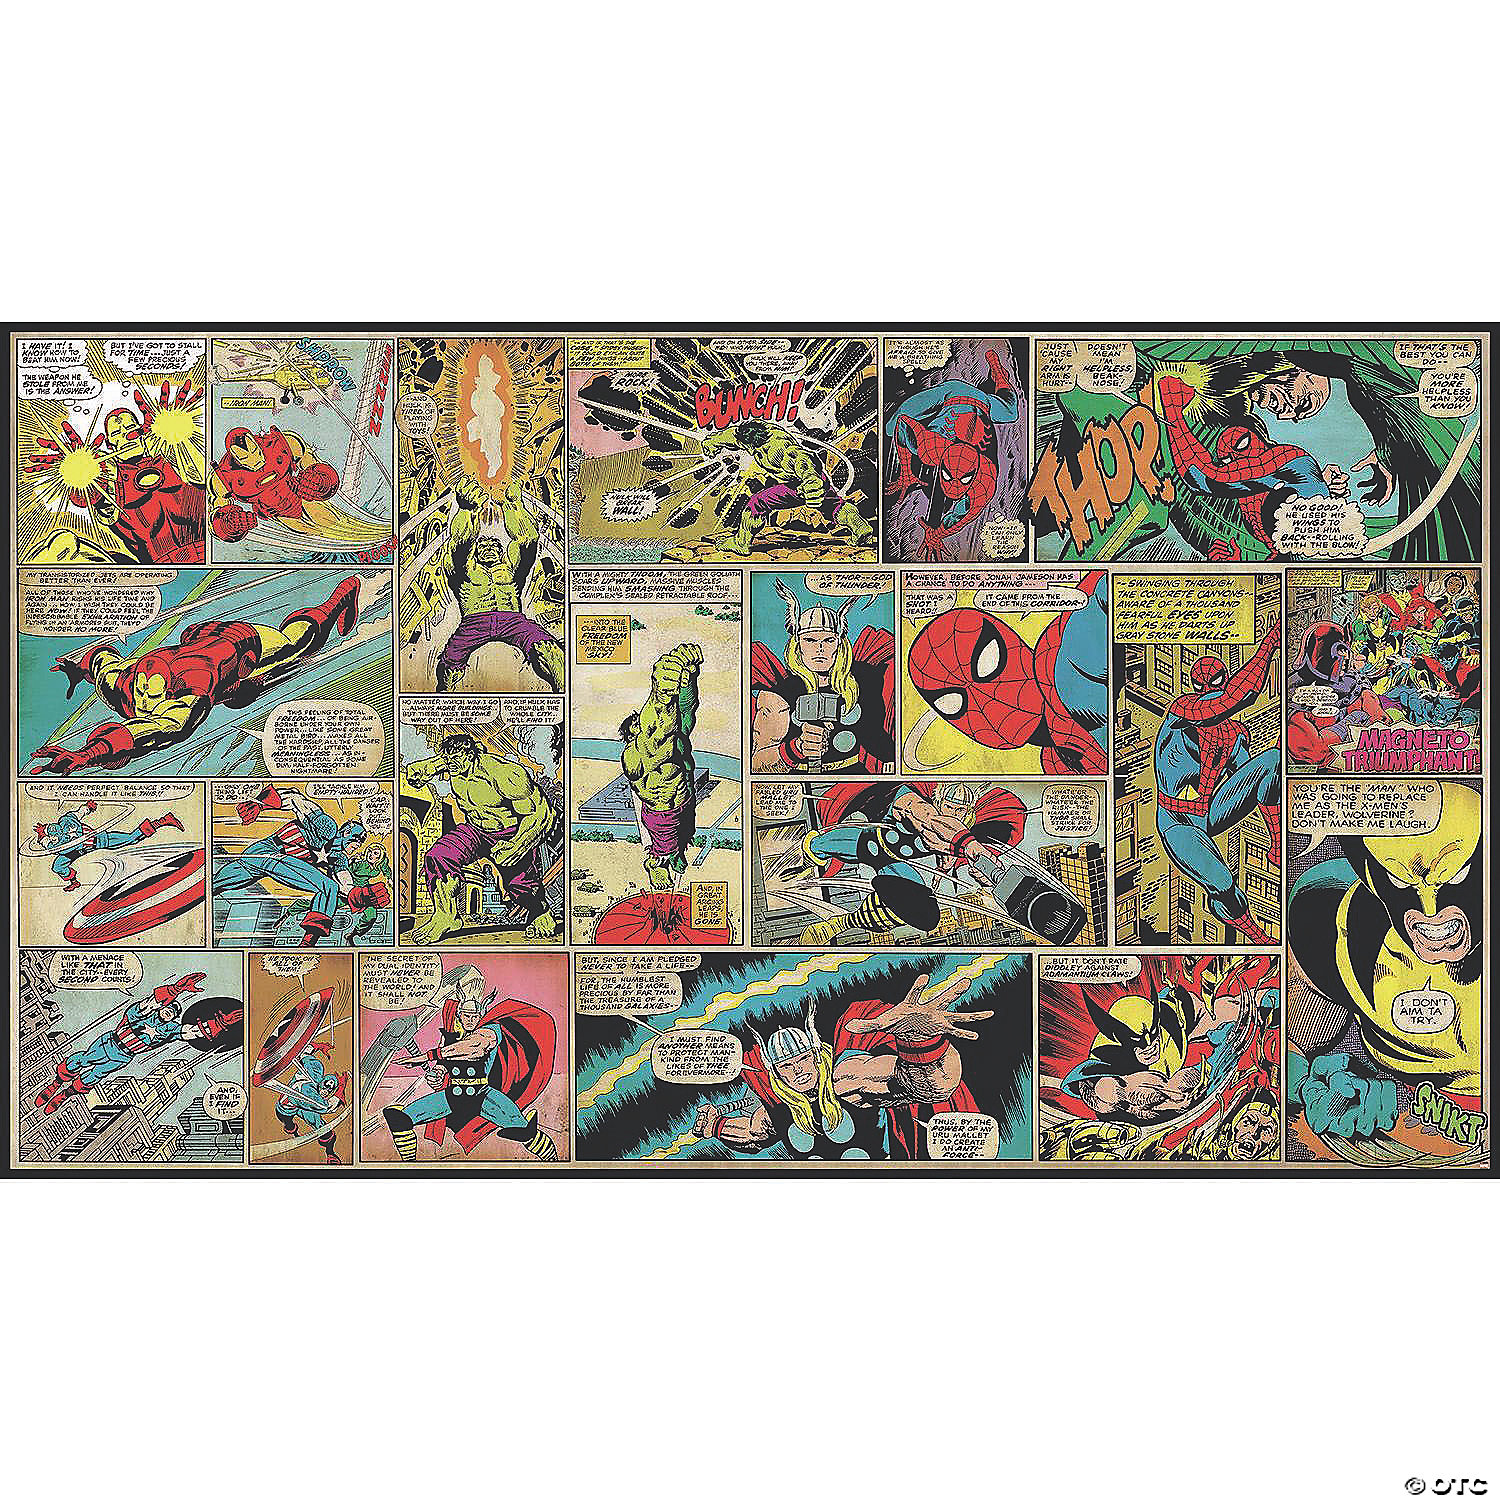 Classic Marvel Comics Wallpapers